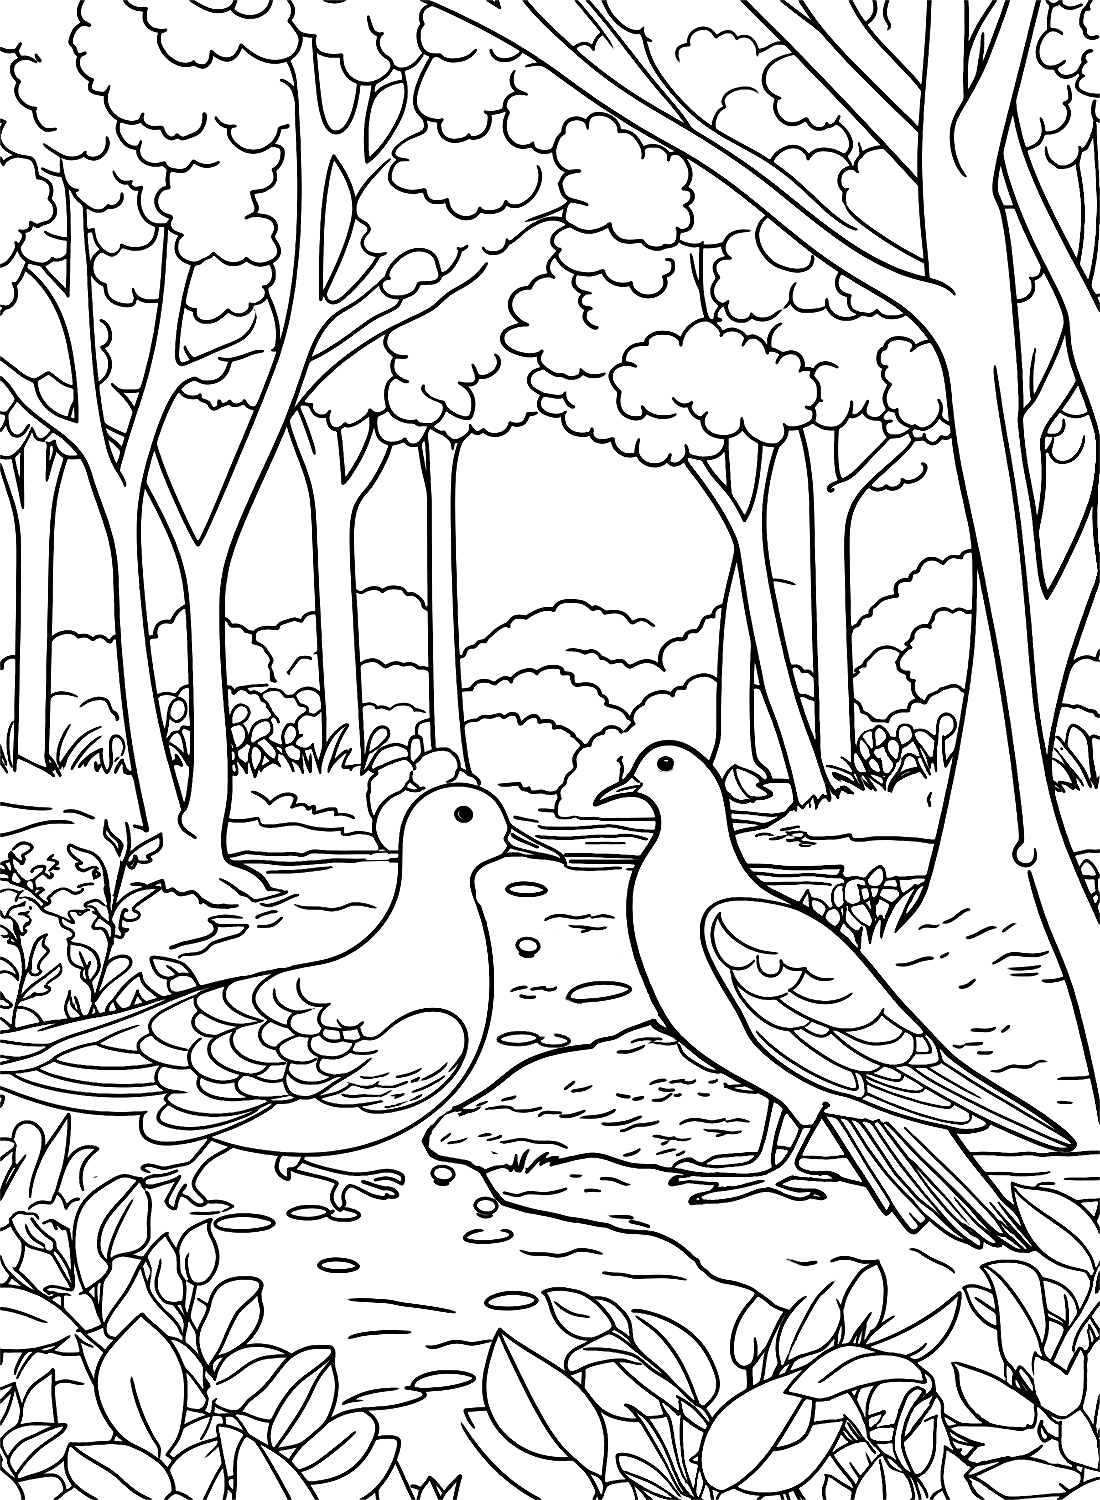 Tauben mit Bach im Wald von Pigeon